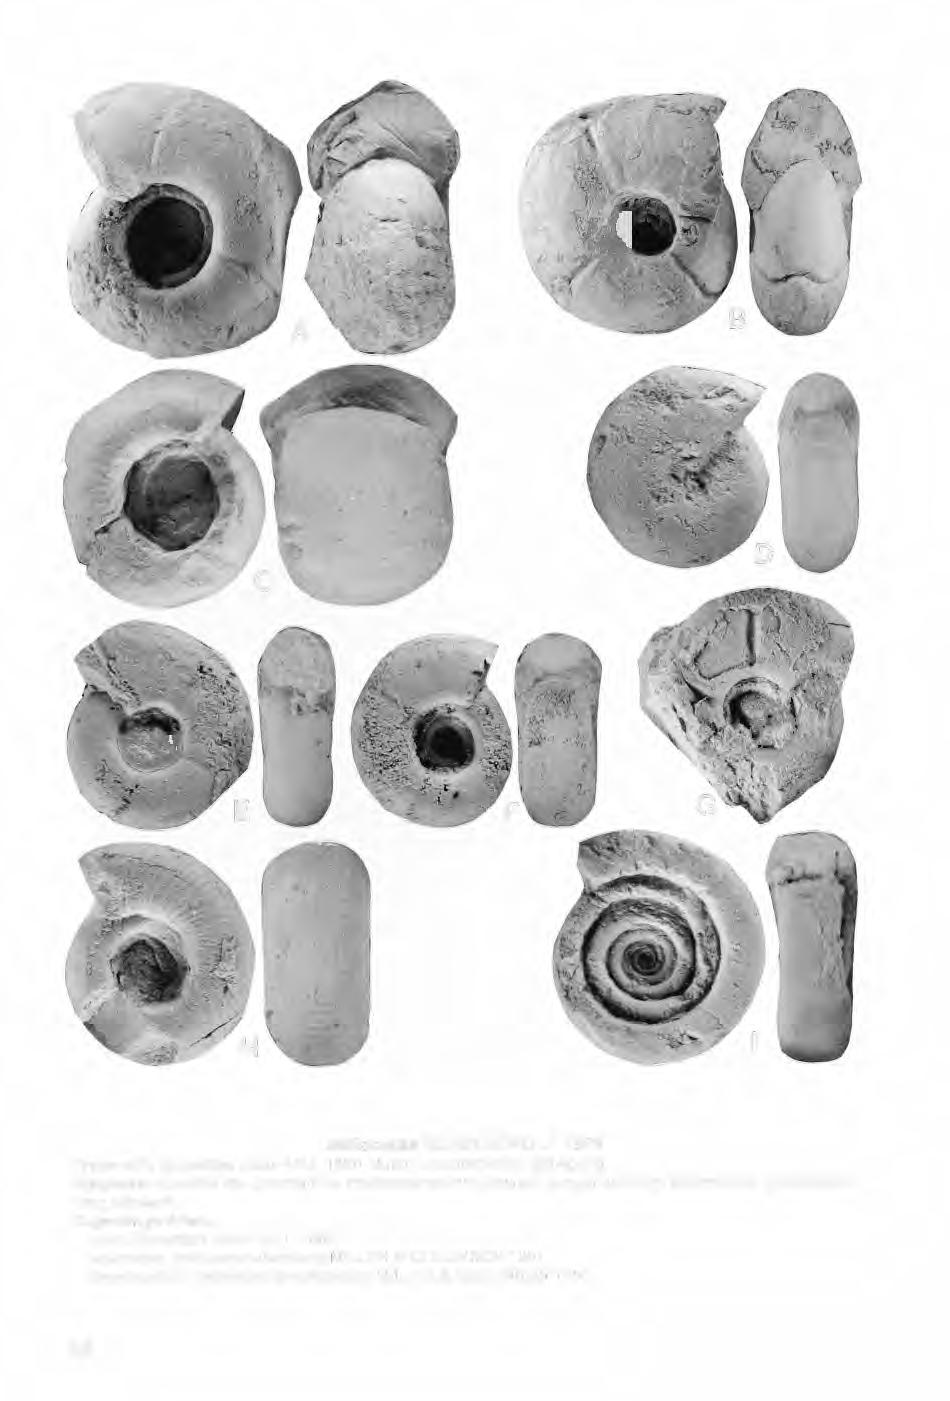 lmitoceras SCHINDEWOLF 1923 Typus-Art: Goniatites lxion HALL